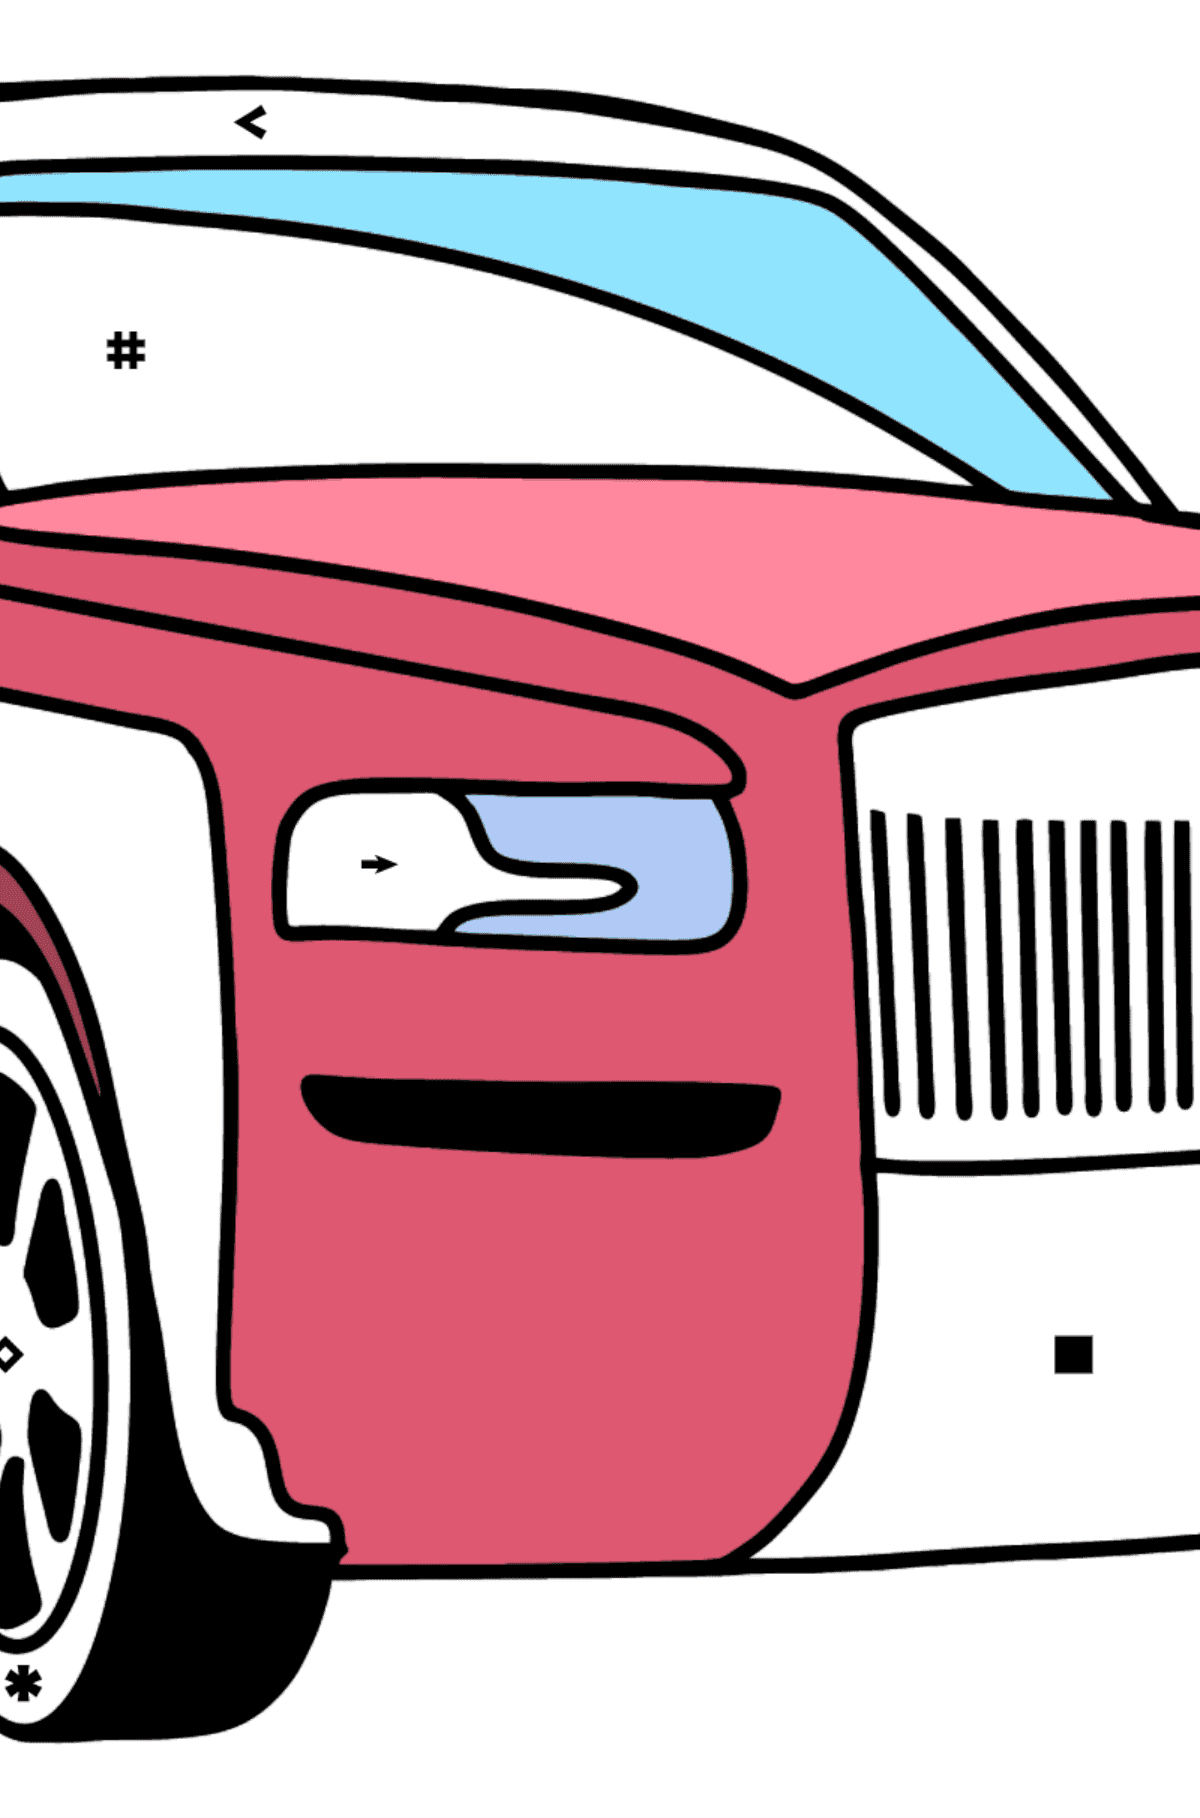 Kolorowanka Samochód Rolls Royce - Kolorowanie według symboli dla dzieci